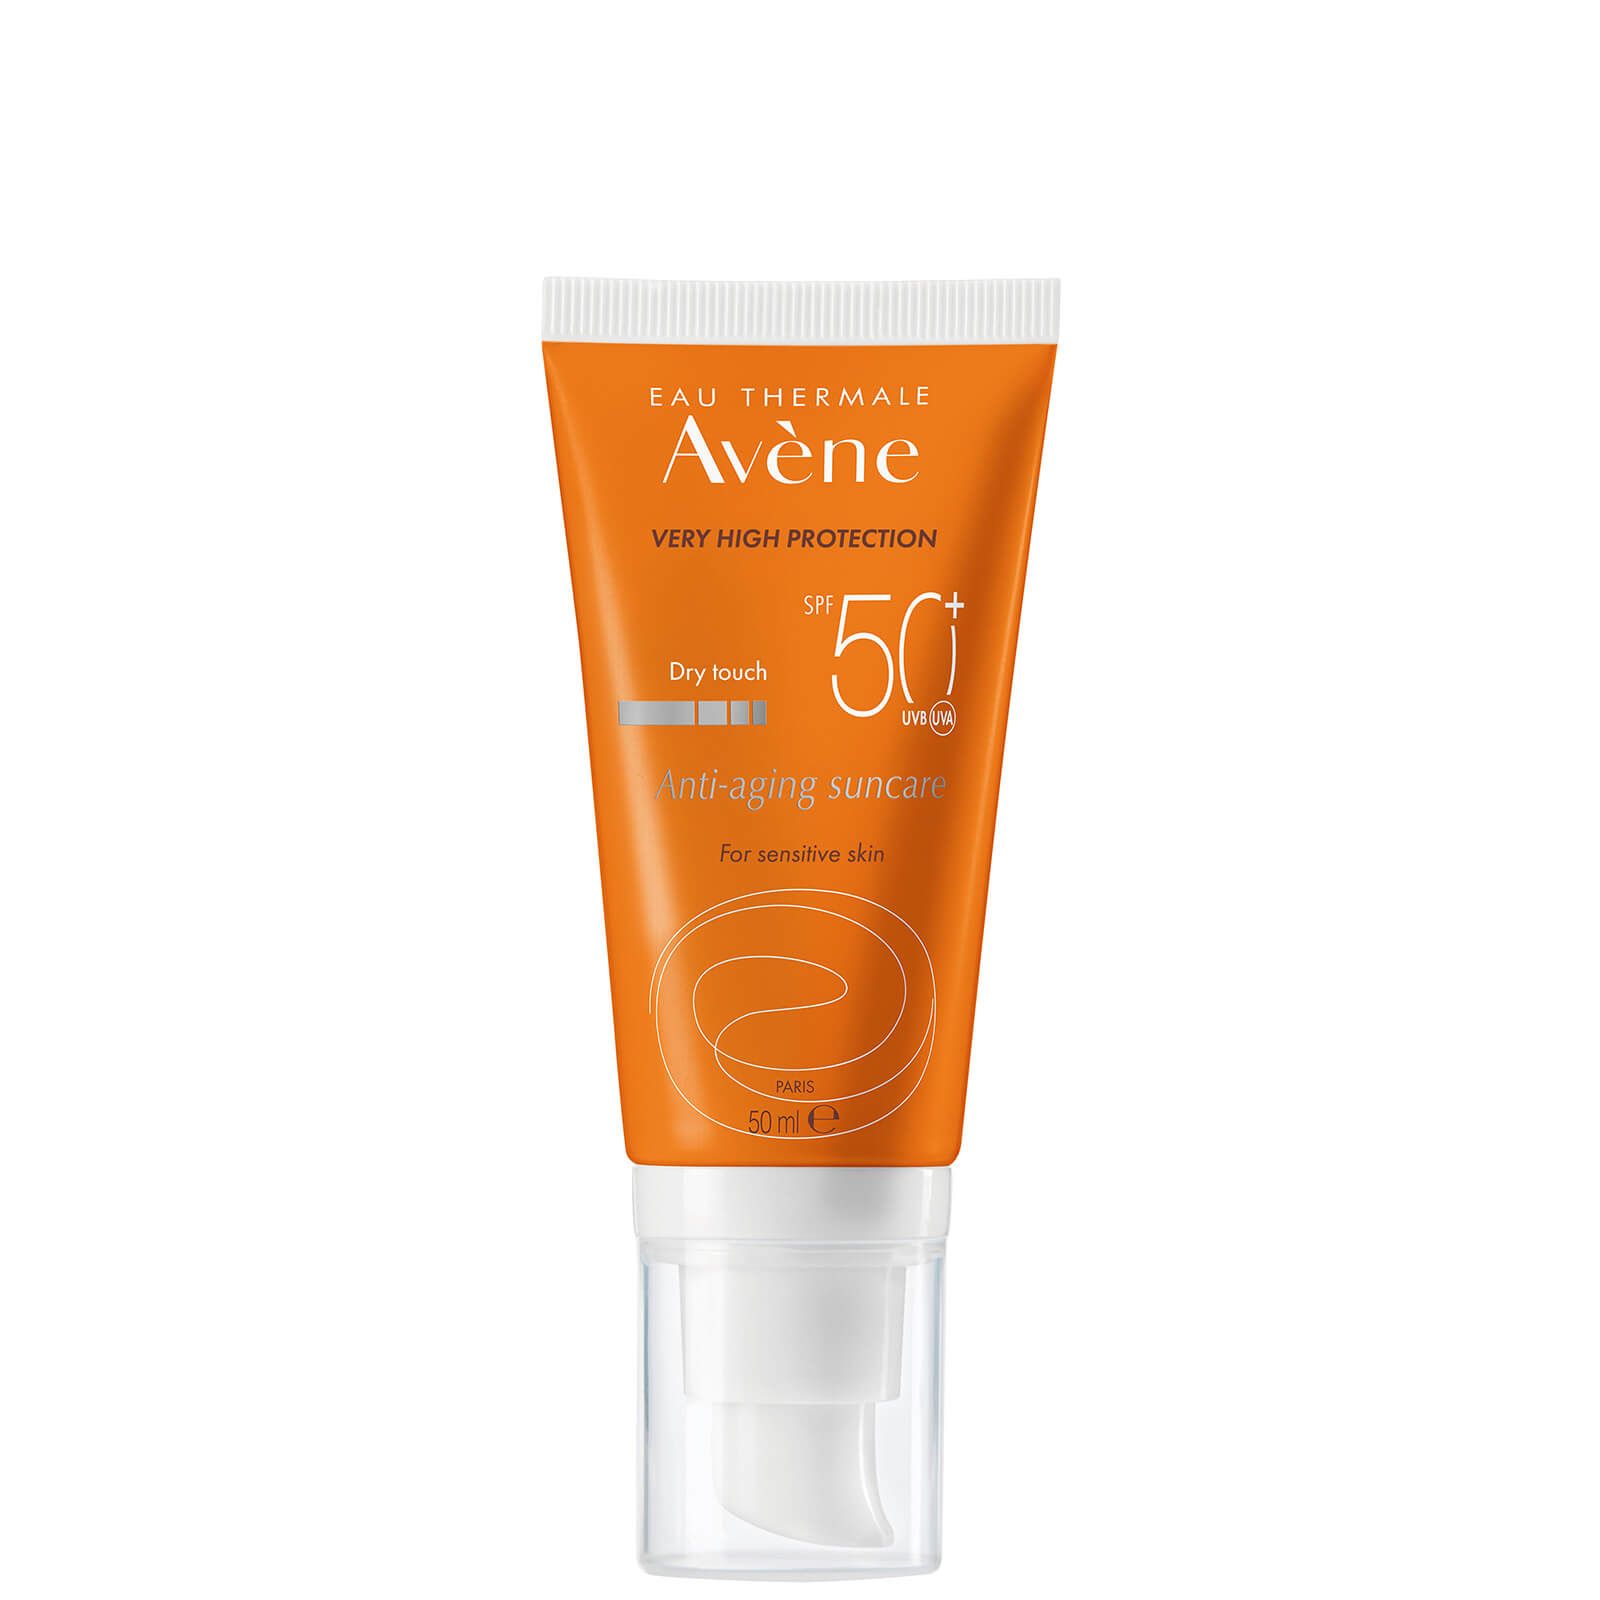 Avène Crema solar antiedad de muy alta protección SPF50+ para pieles sensibles 50ml